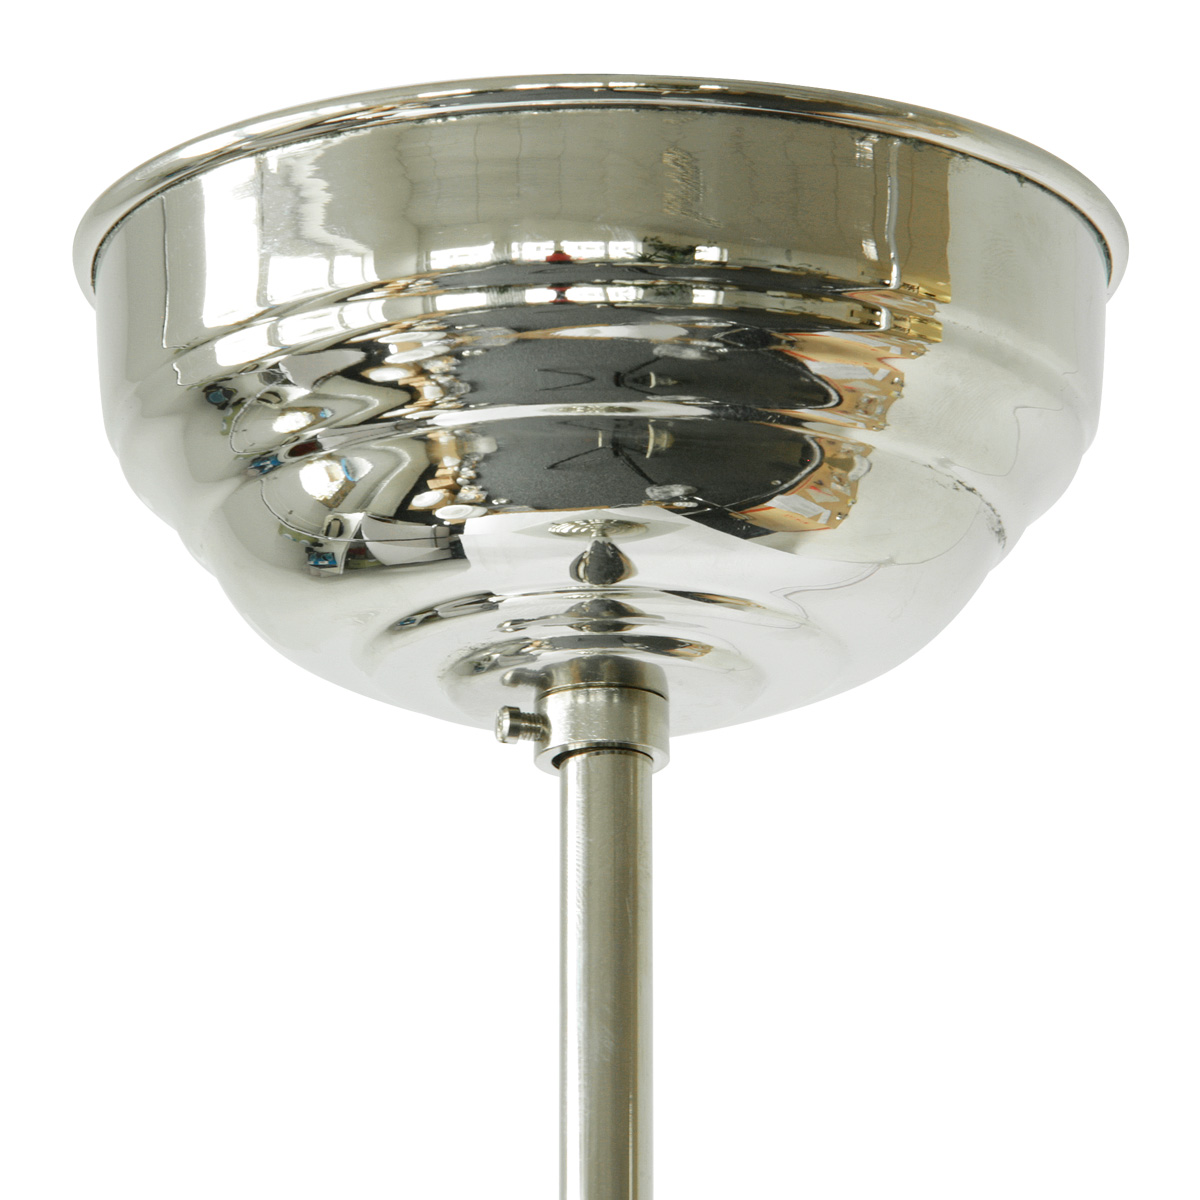 Rohr-Pendelleuchte mit spitzem Art déco-Opalglas: Der Baldachin, hier in Messing glänzend vernickelt